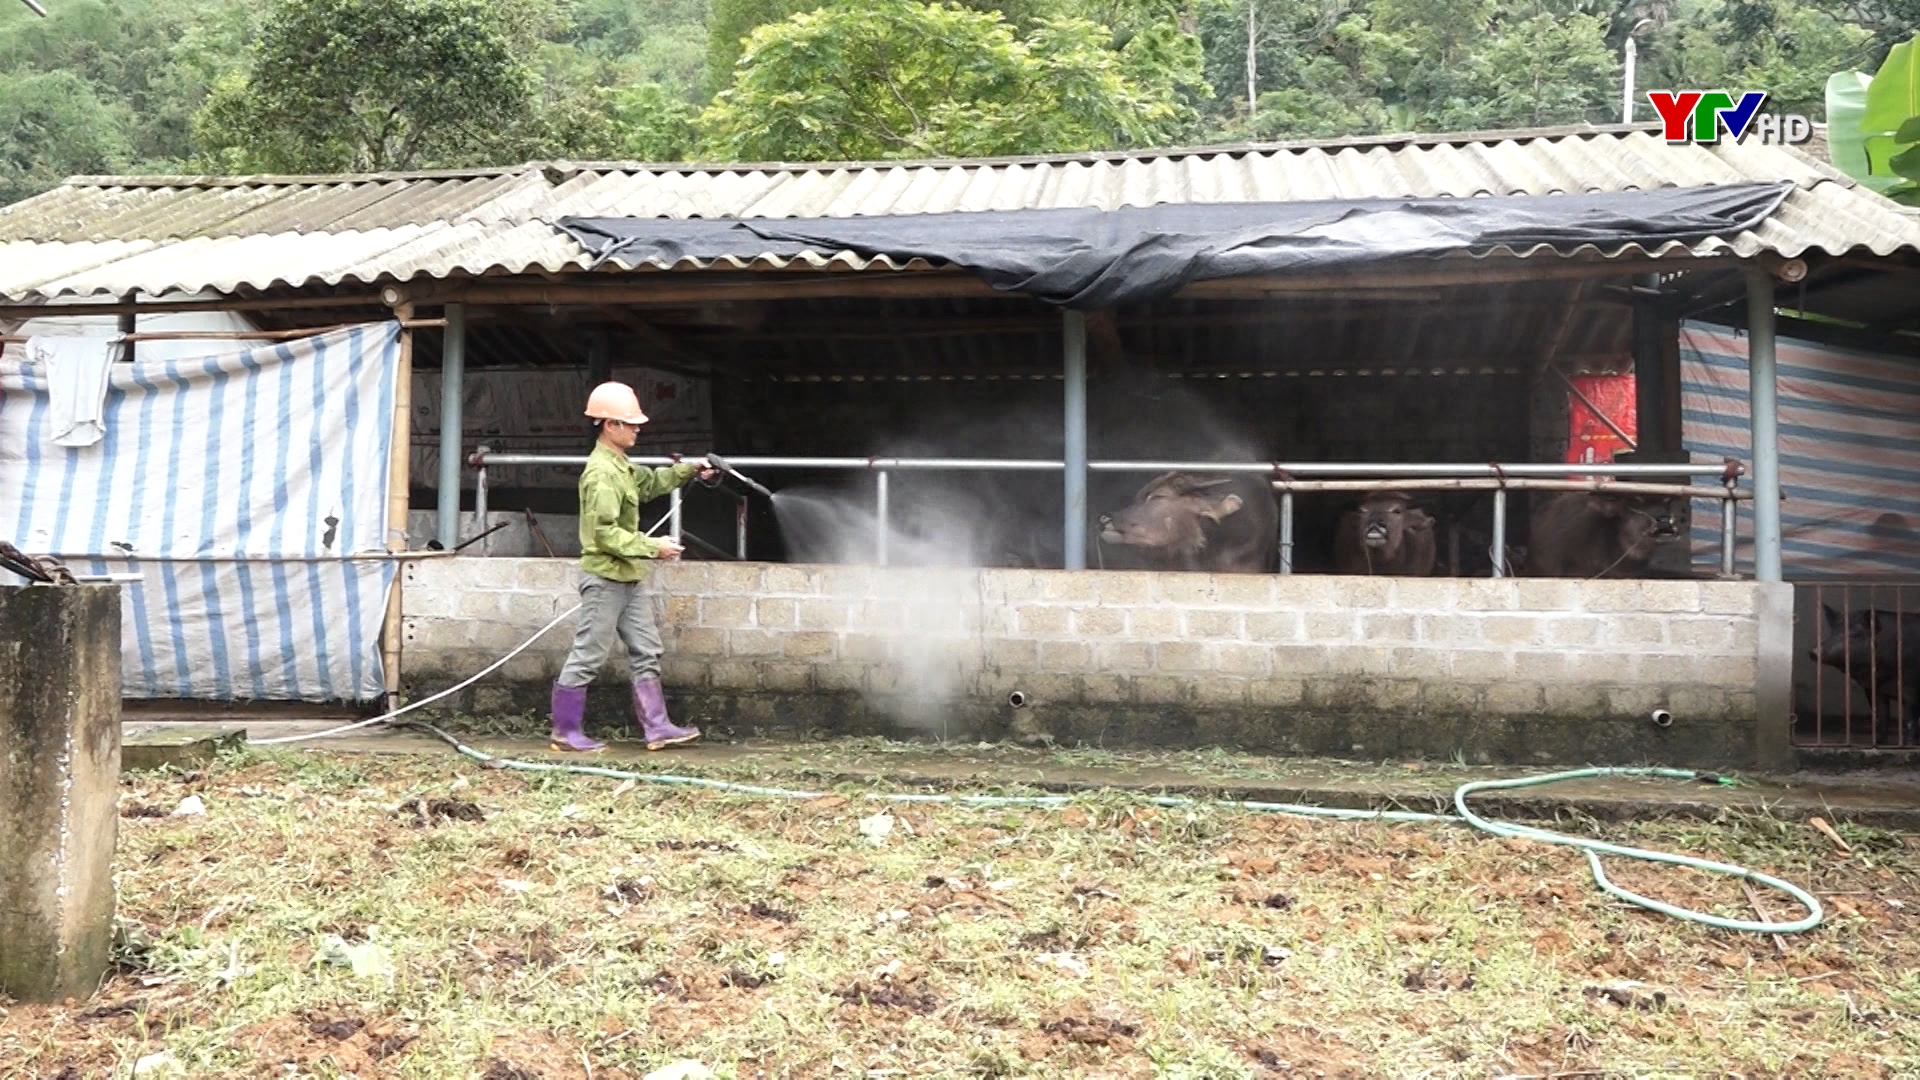 Huyện Lục Yên tăng cường các biện pháp phòng, chống bệnh viêm da nổi cục trên trâu bò